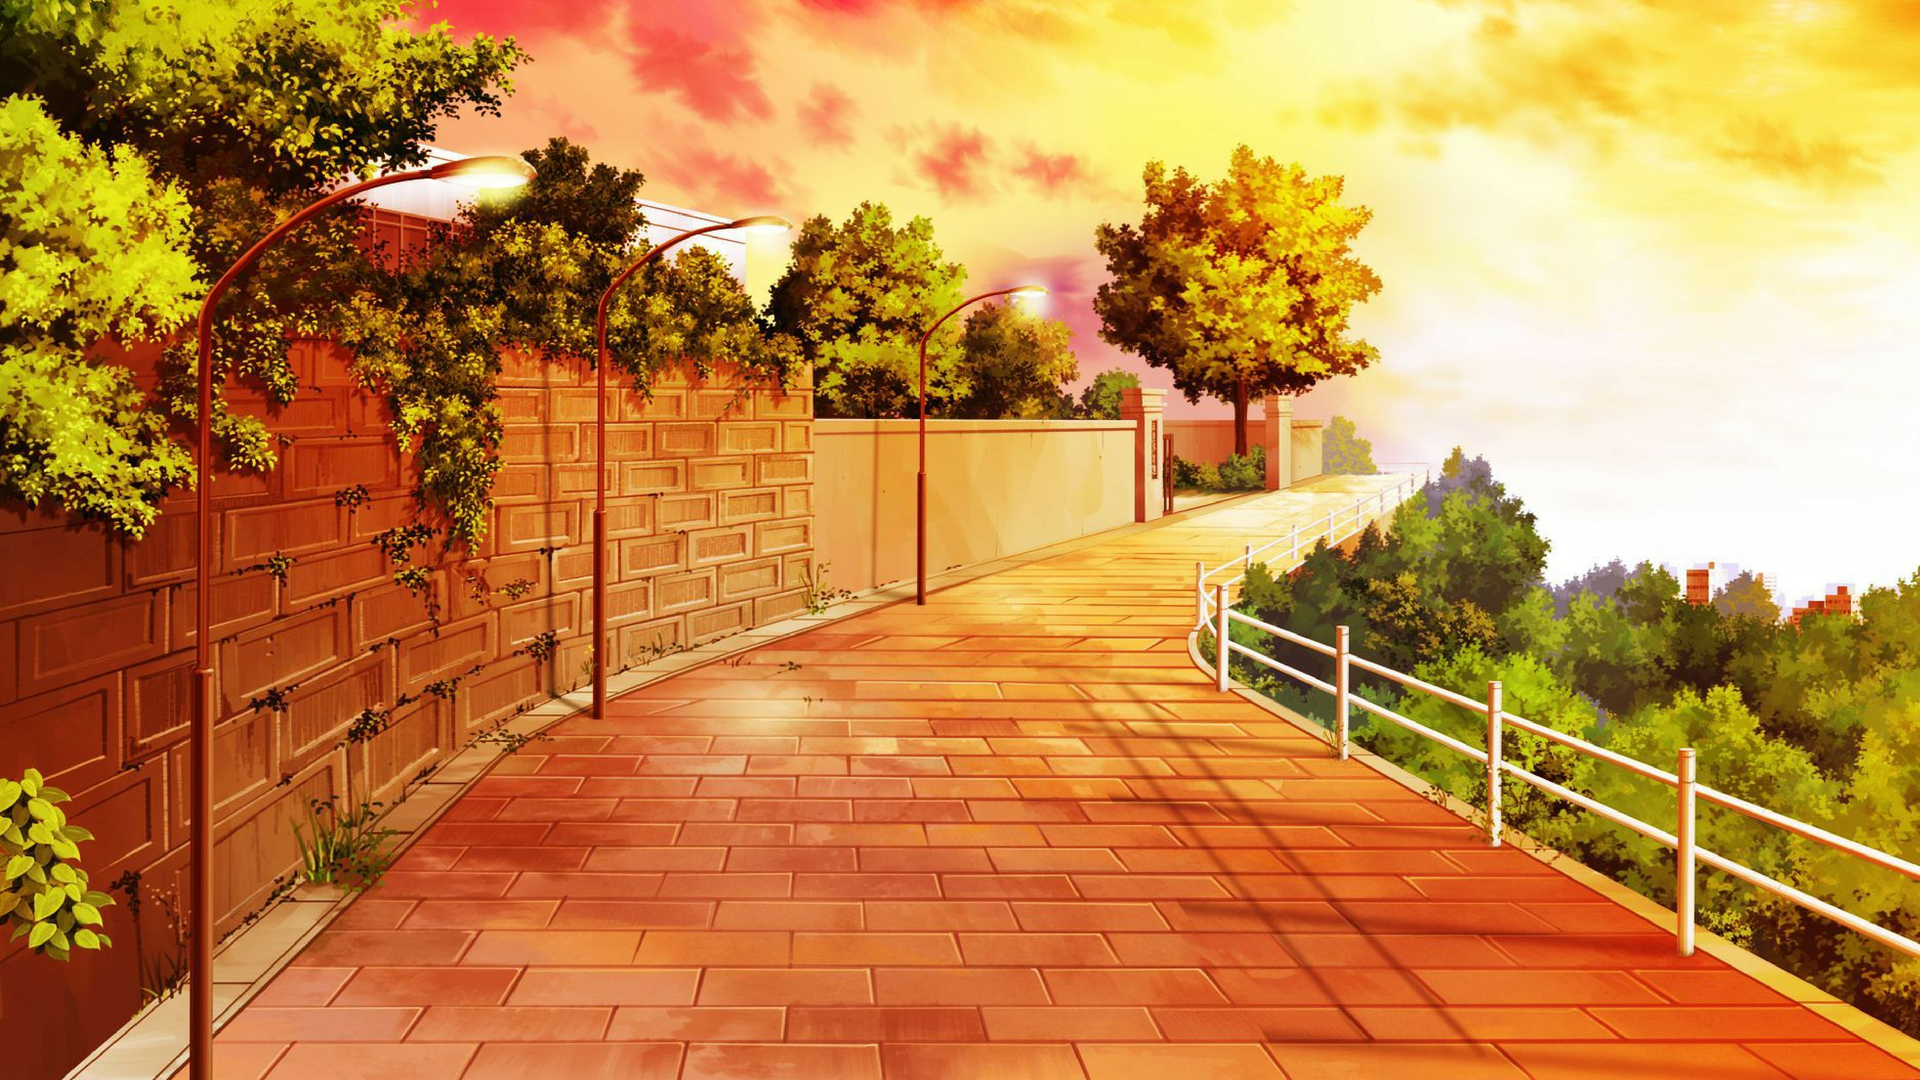 Anime Girl & Sunset Wallpapers - Anime Aesthetic Wallpapers 4k